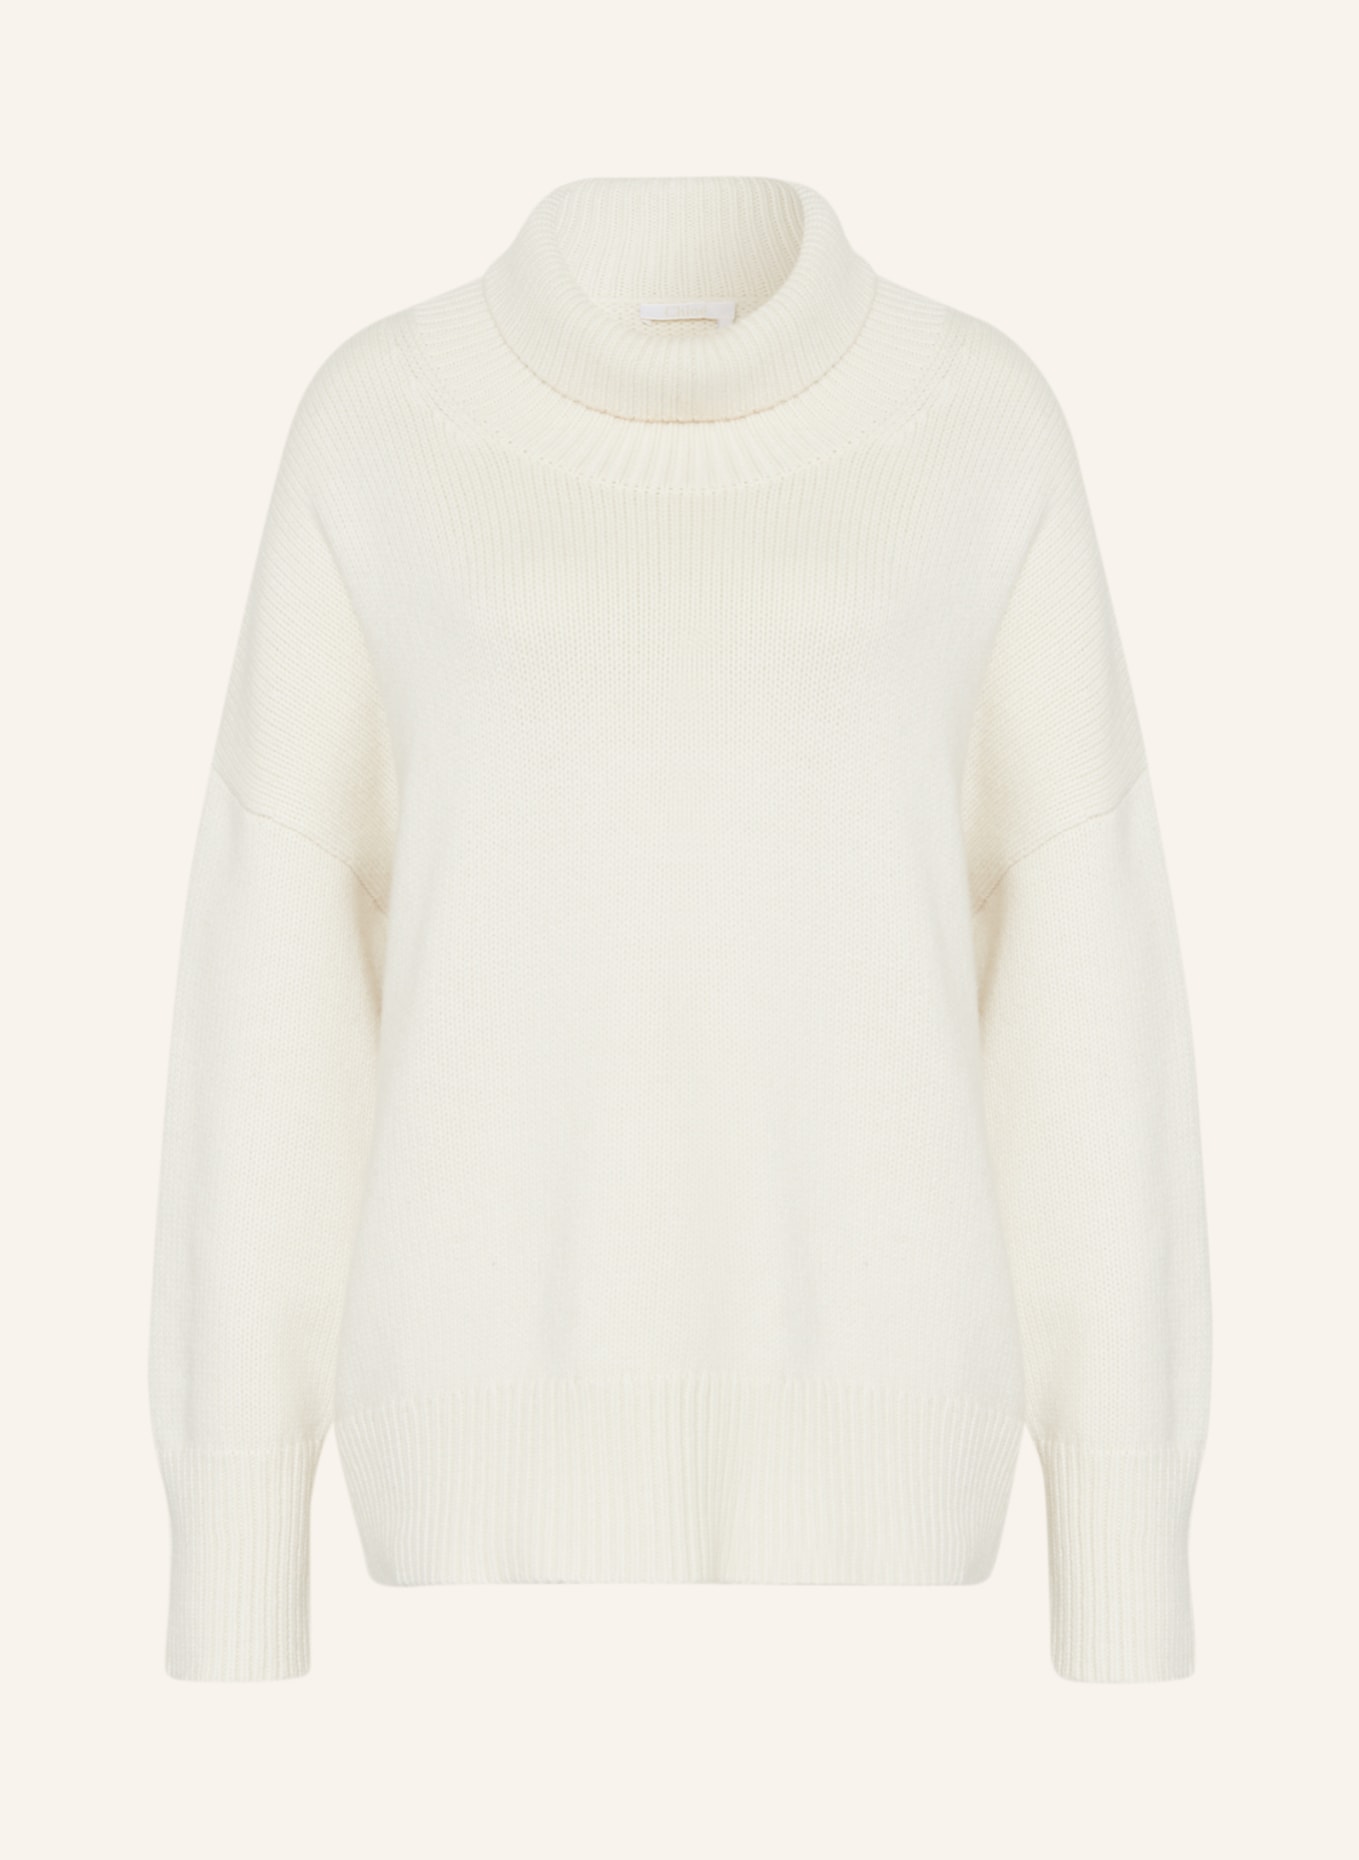 Chloé Turtleneck sweater in cashmere, Color: ECRU (Image 1)